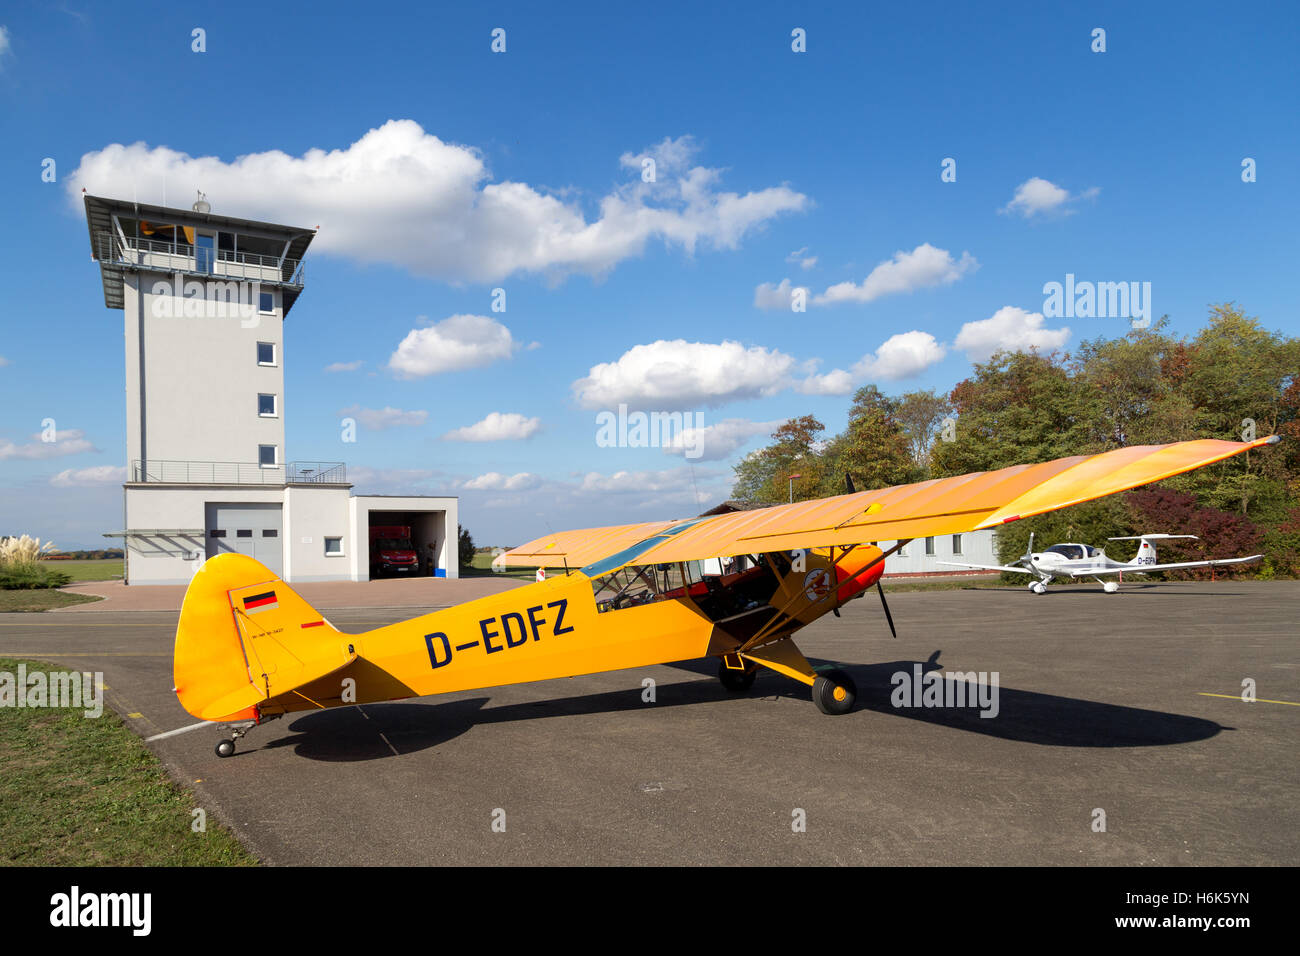 Bremgarten, Deutschland - 22. Oktober 2016: Eine klassische gelbe Piper Cub Flugzeuge parken am Flughafen Stockfoto